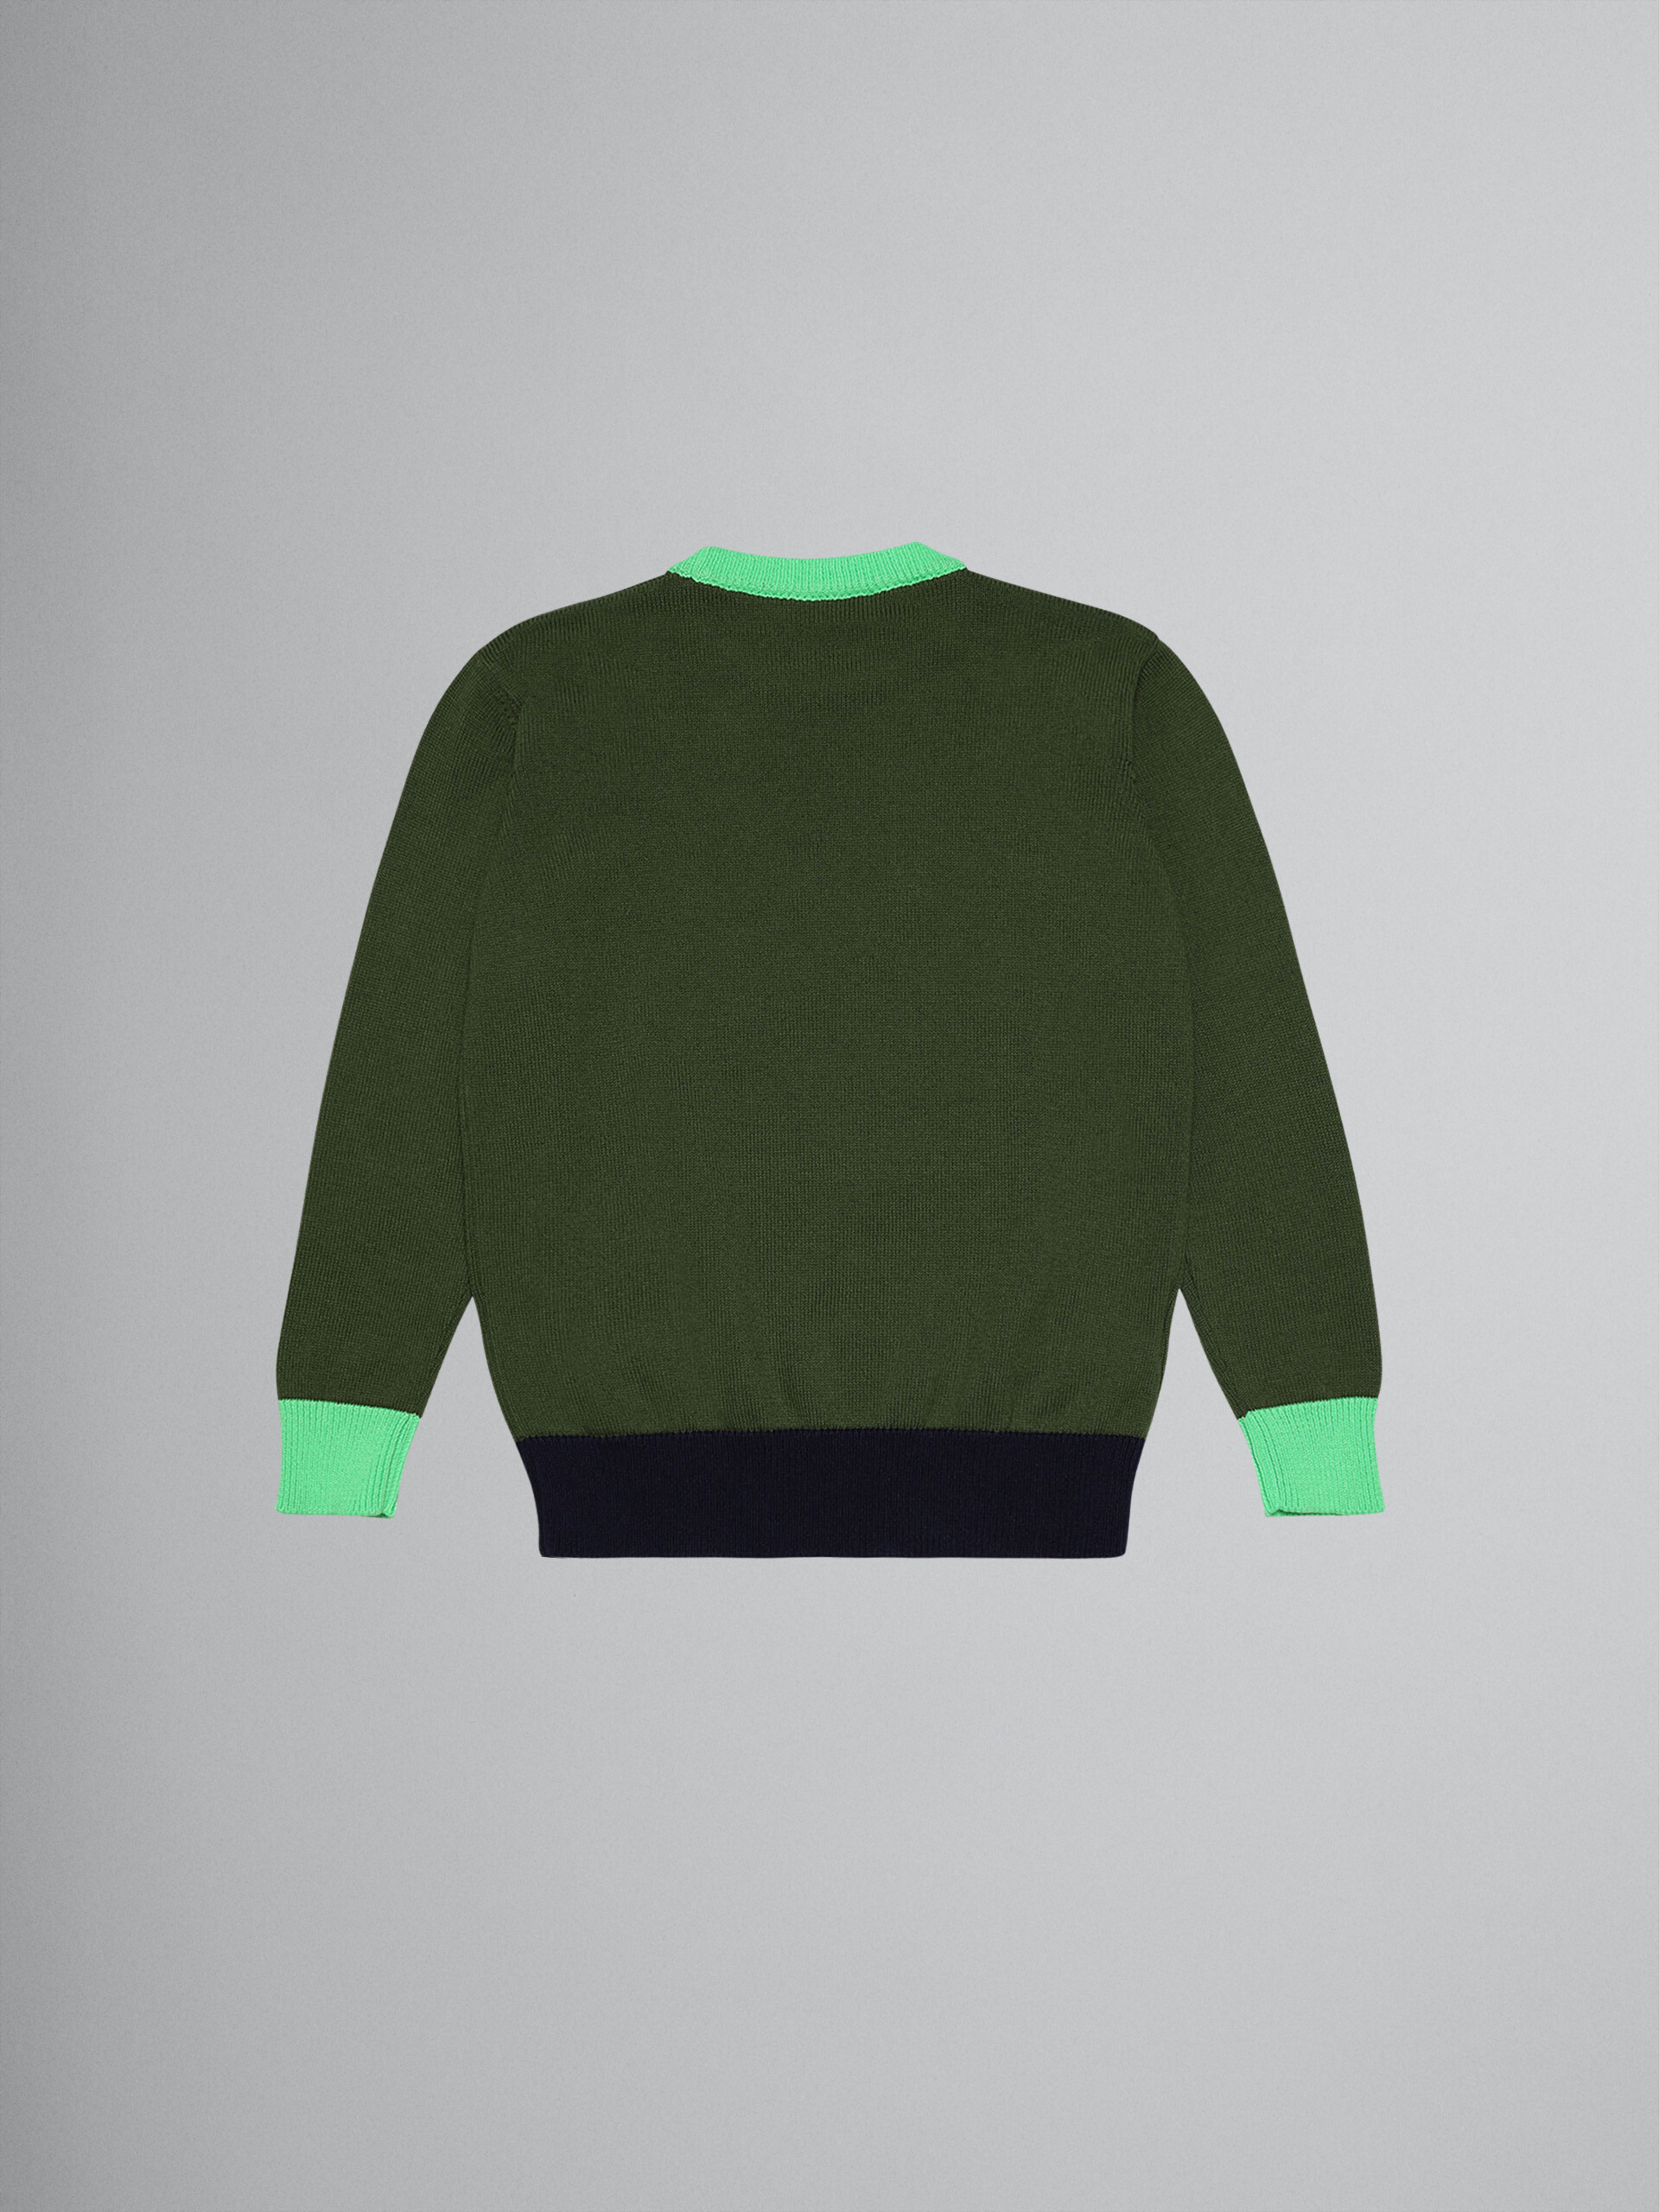 Sudadera algodón verde con logotipo - Prendas de punto - Image 2